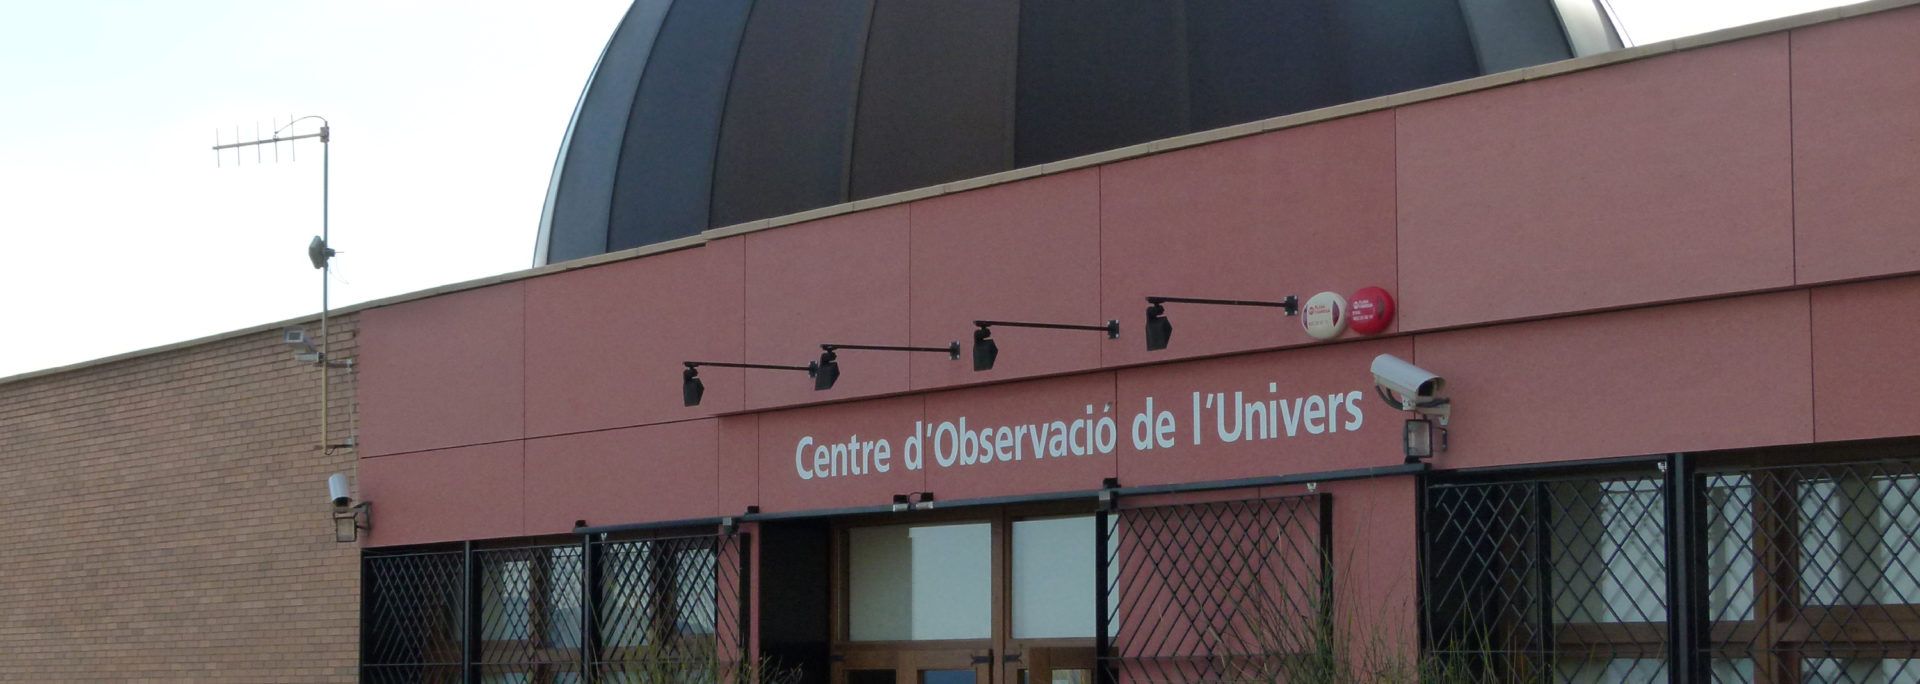 Centre d'Observació de l'Univers, Observatori del Montsec